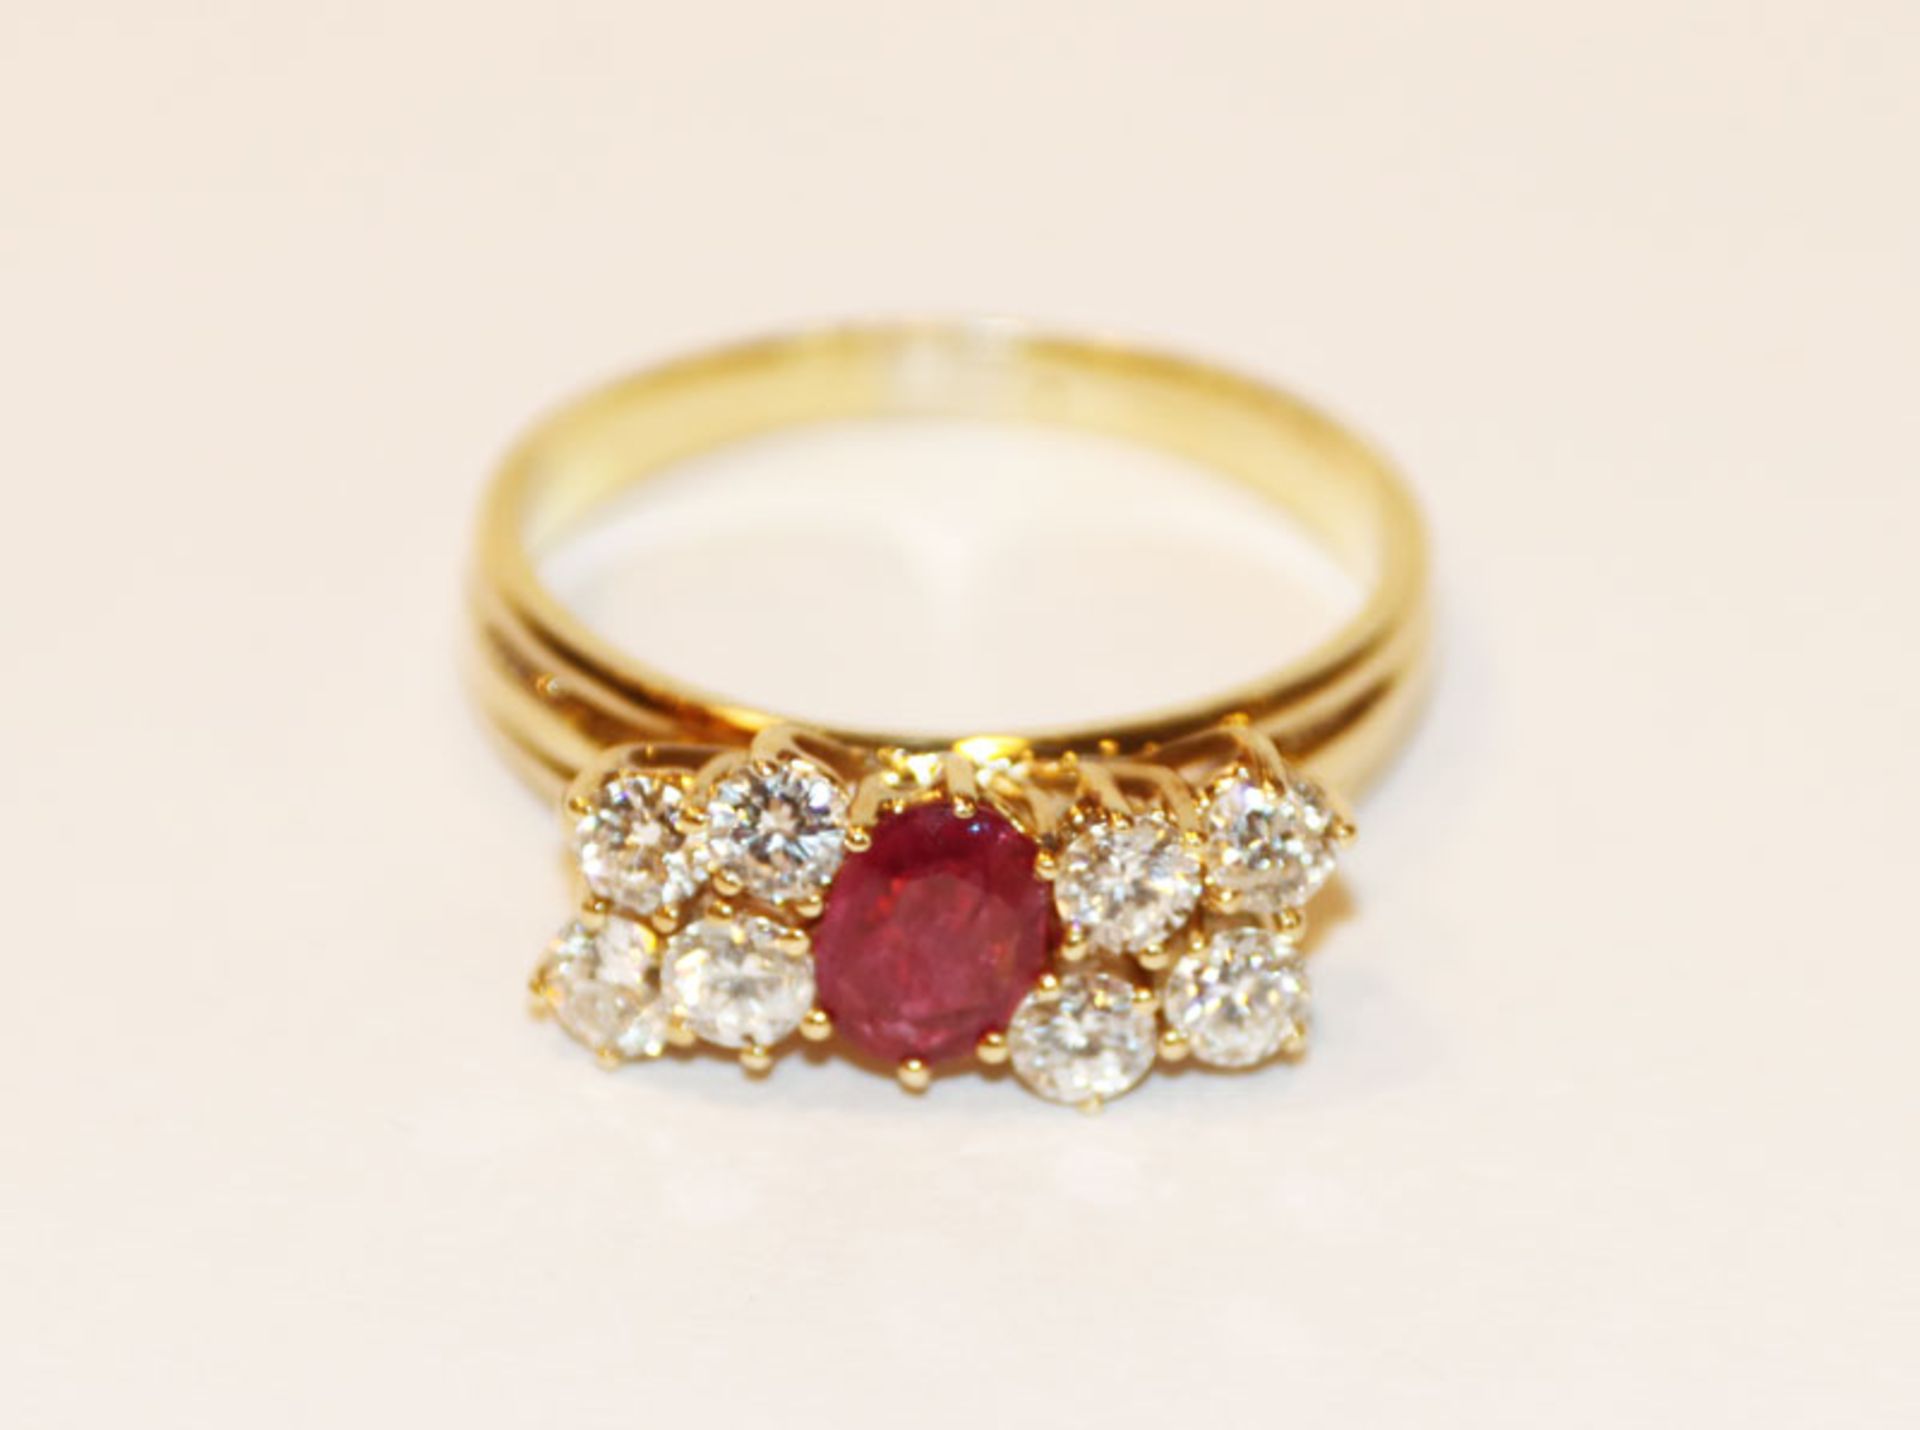 18 k Gelbgold geprüfter Ring mit Rubin und 8 Diamanten, zus. ca. 0,70 ct., Gr. 56, klassische